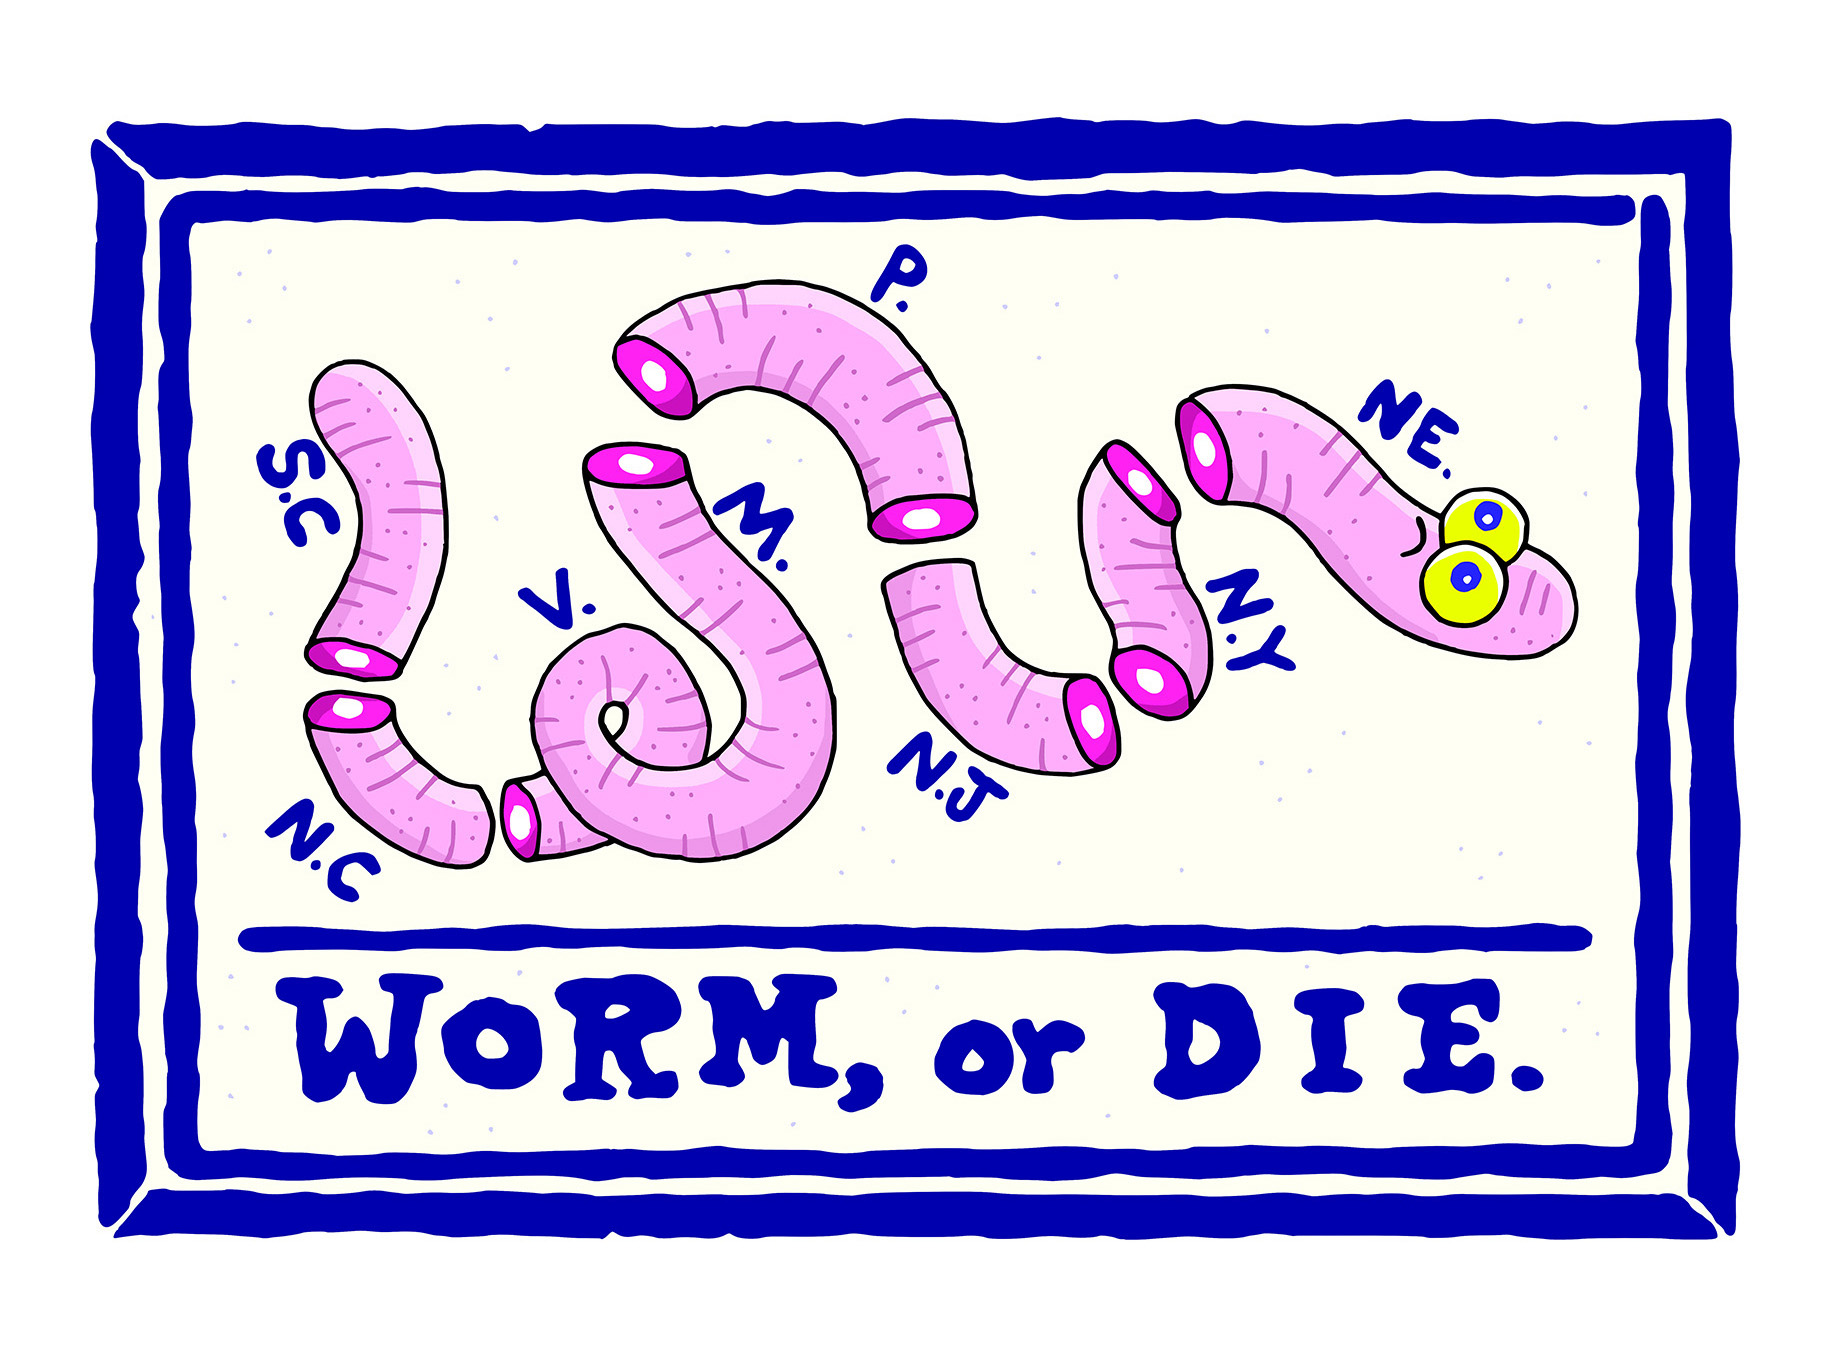 worm or die web spt